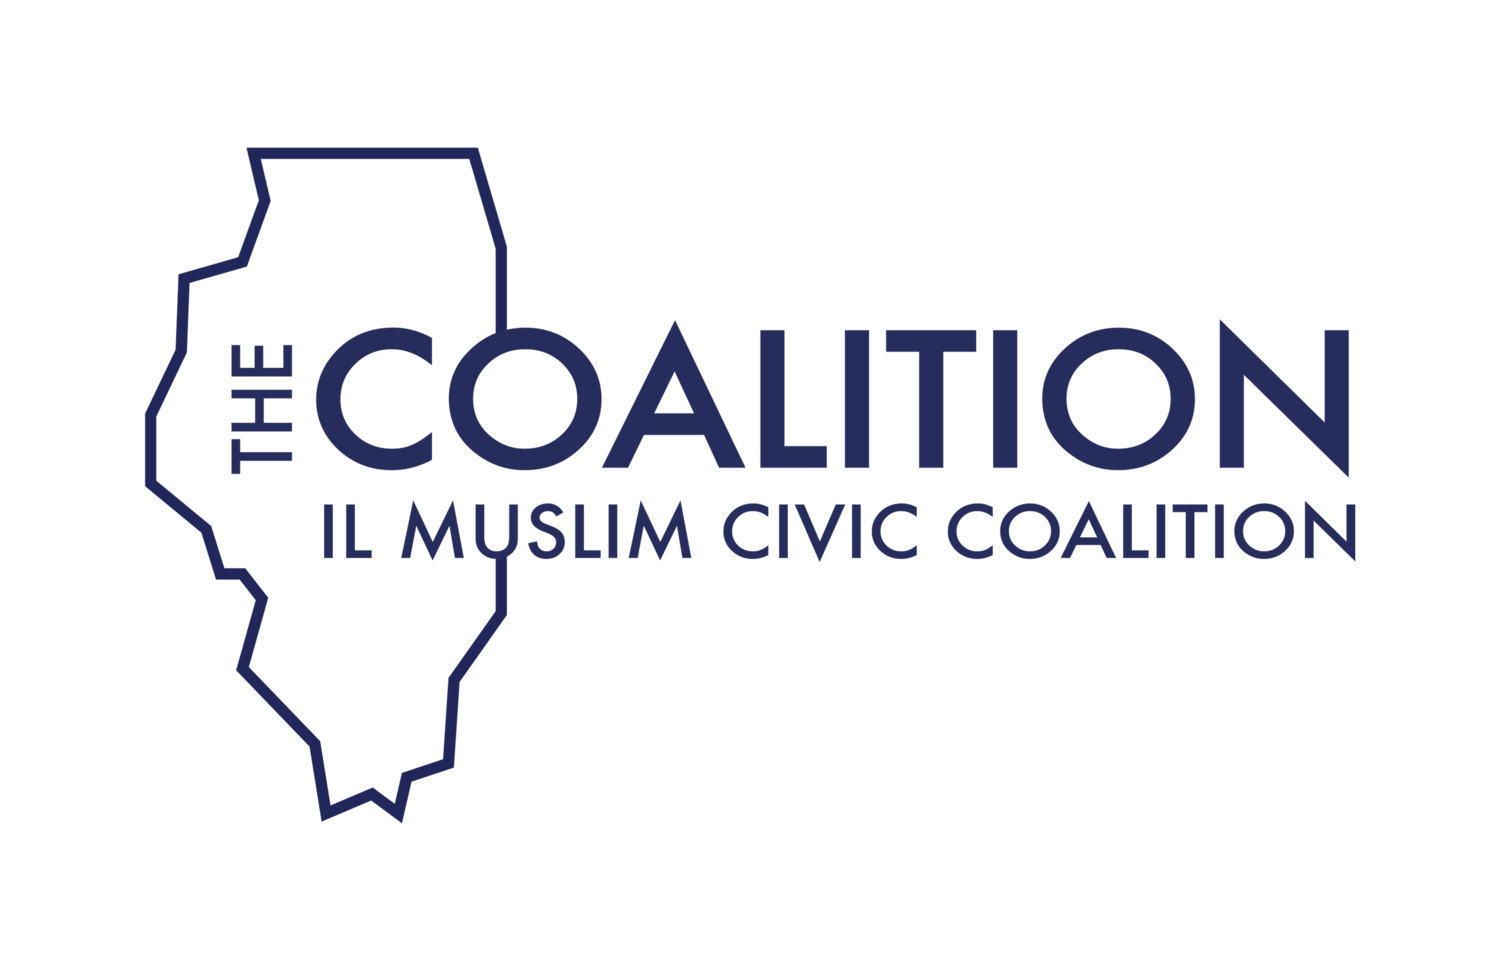 IL Muslim Civic Coalition